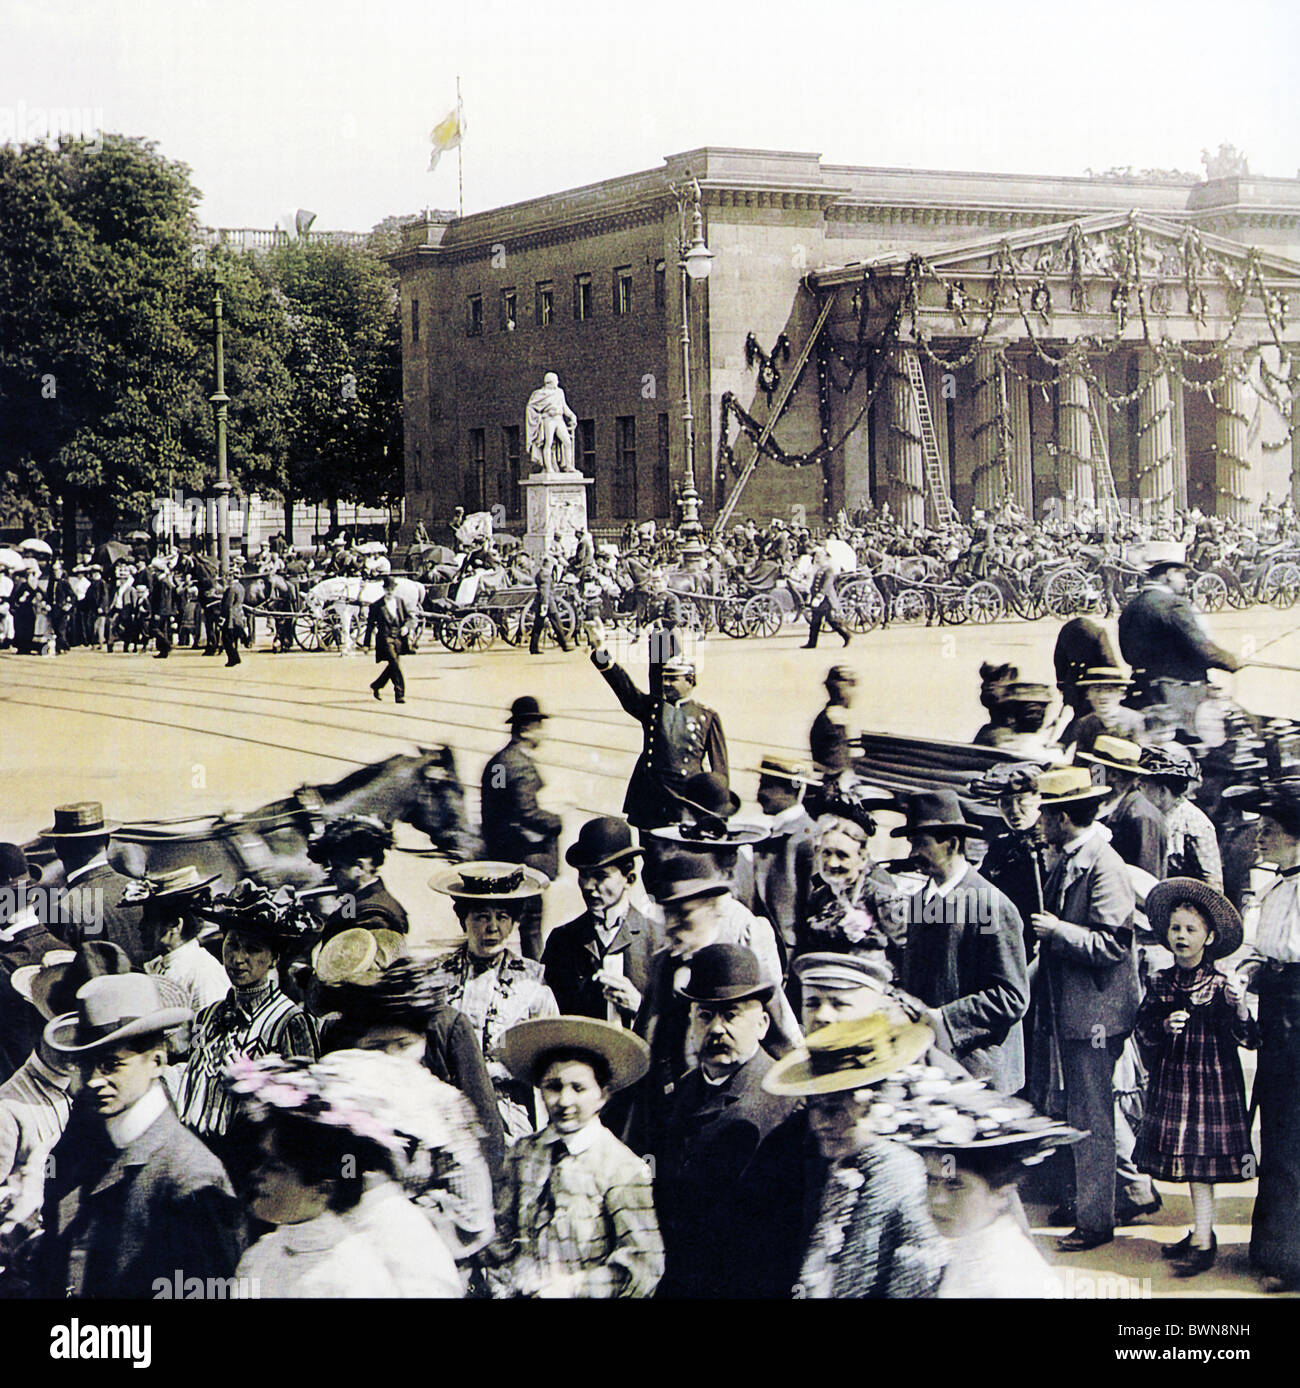 1905 Berlin Neue Wache Juin 3 Historique Historique Historique de l'Empire allemand Allemagne Europe foule parade societ Banque D'Images